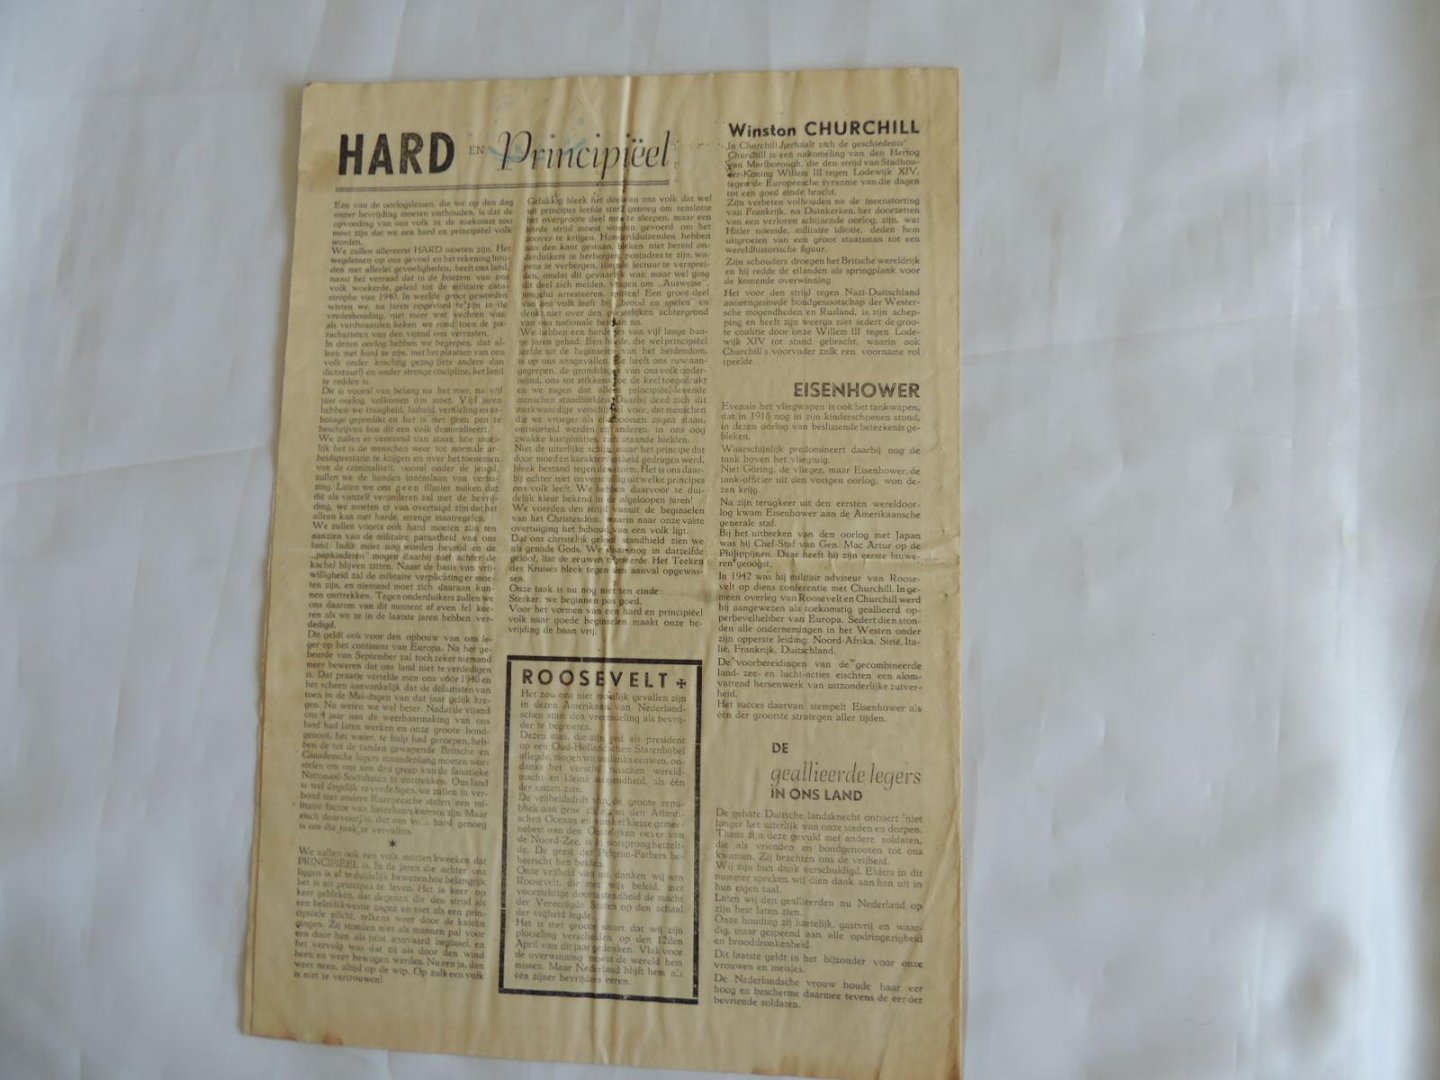  - Krant "Trouw", 3e Jaargang, mei 1945 - Bevrijdingsnummer met o.a. art. onder de kop VRIJ!, Radicale zuivering en Hard en Pricipiëel